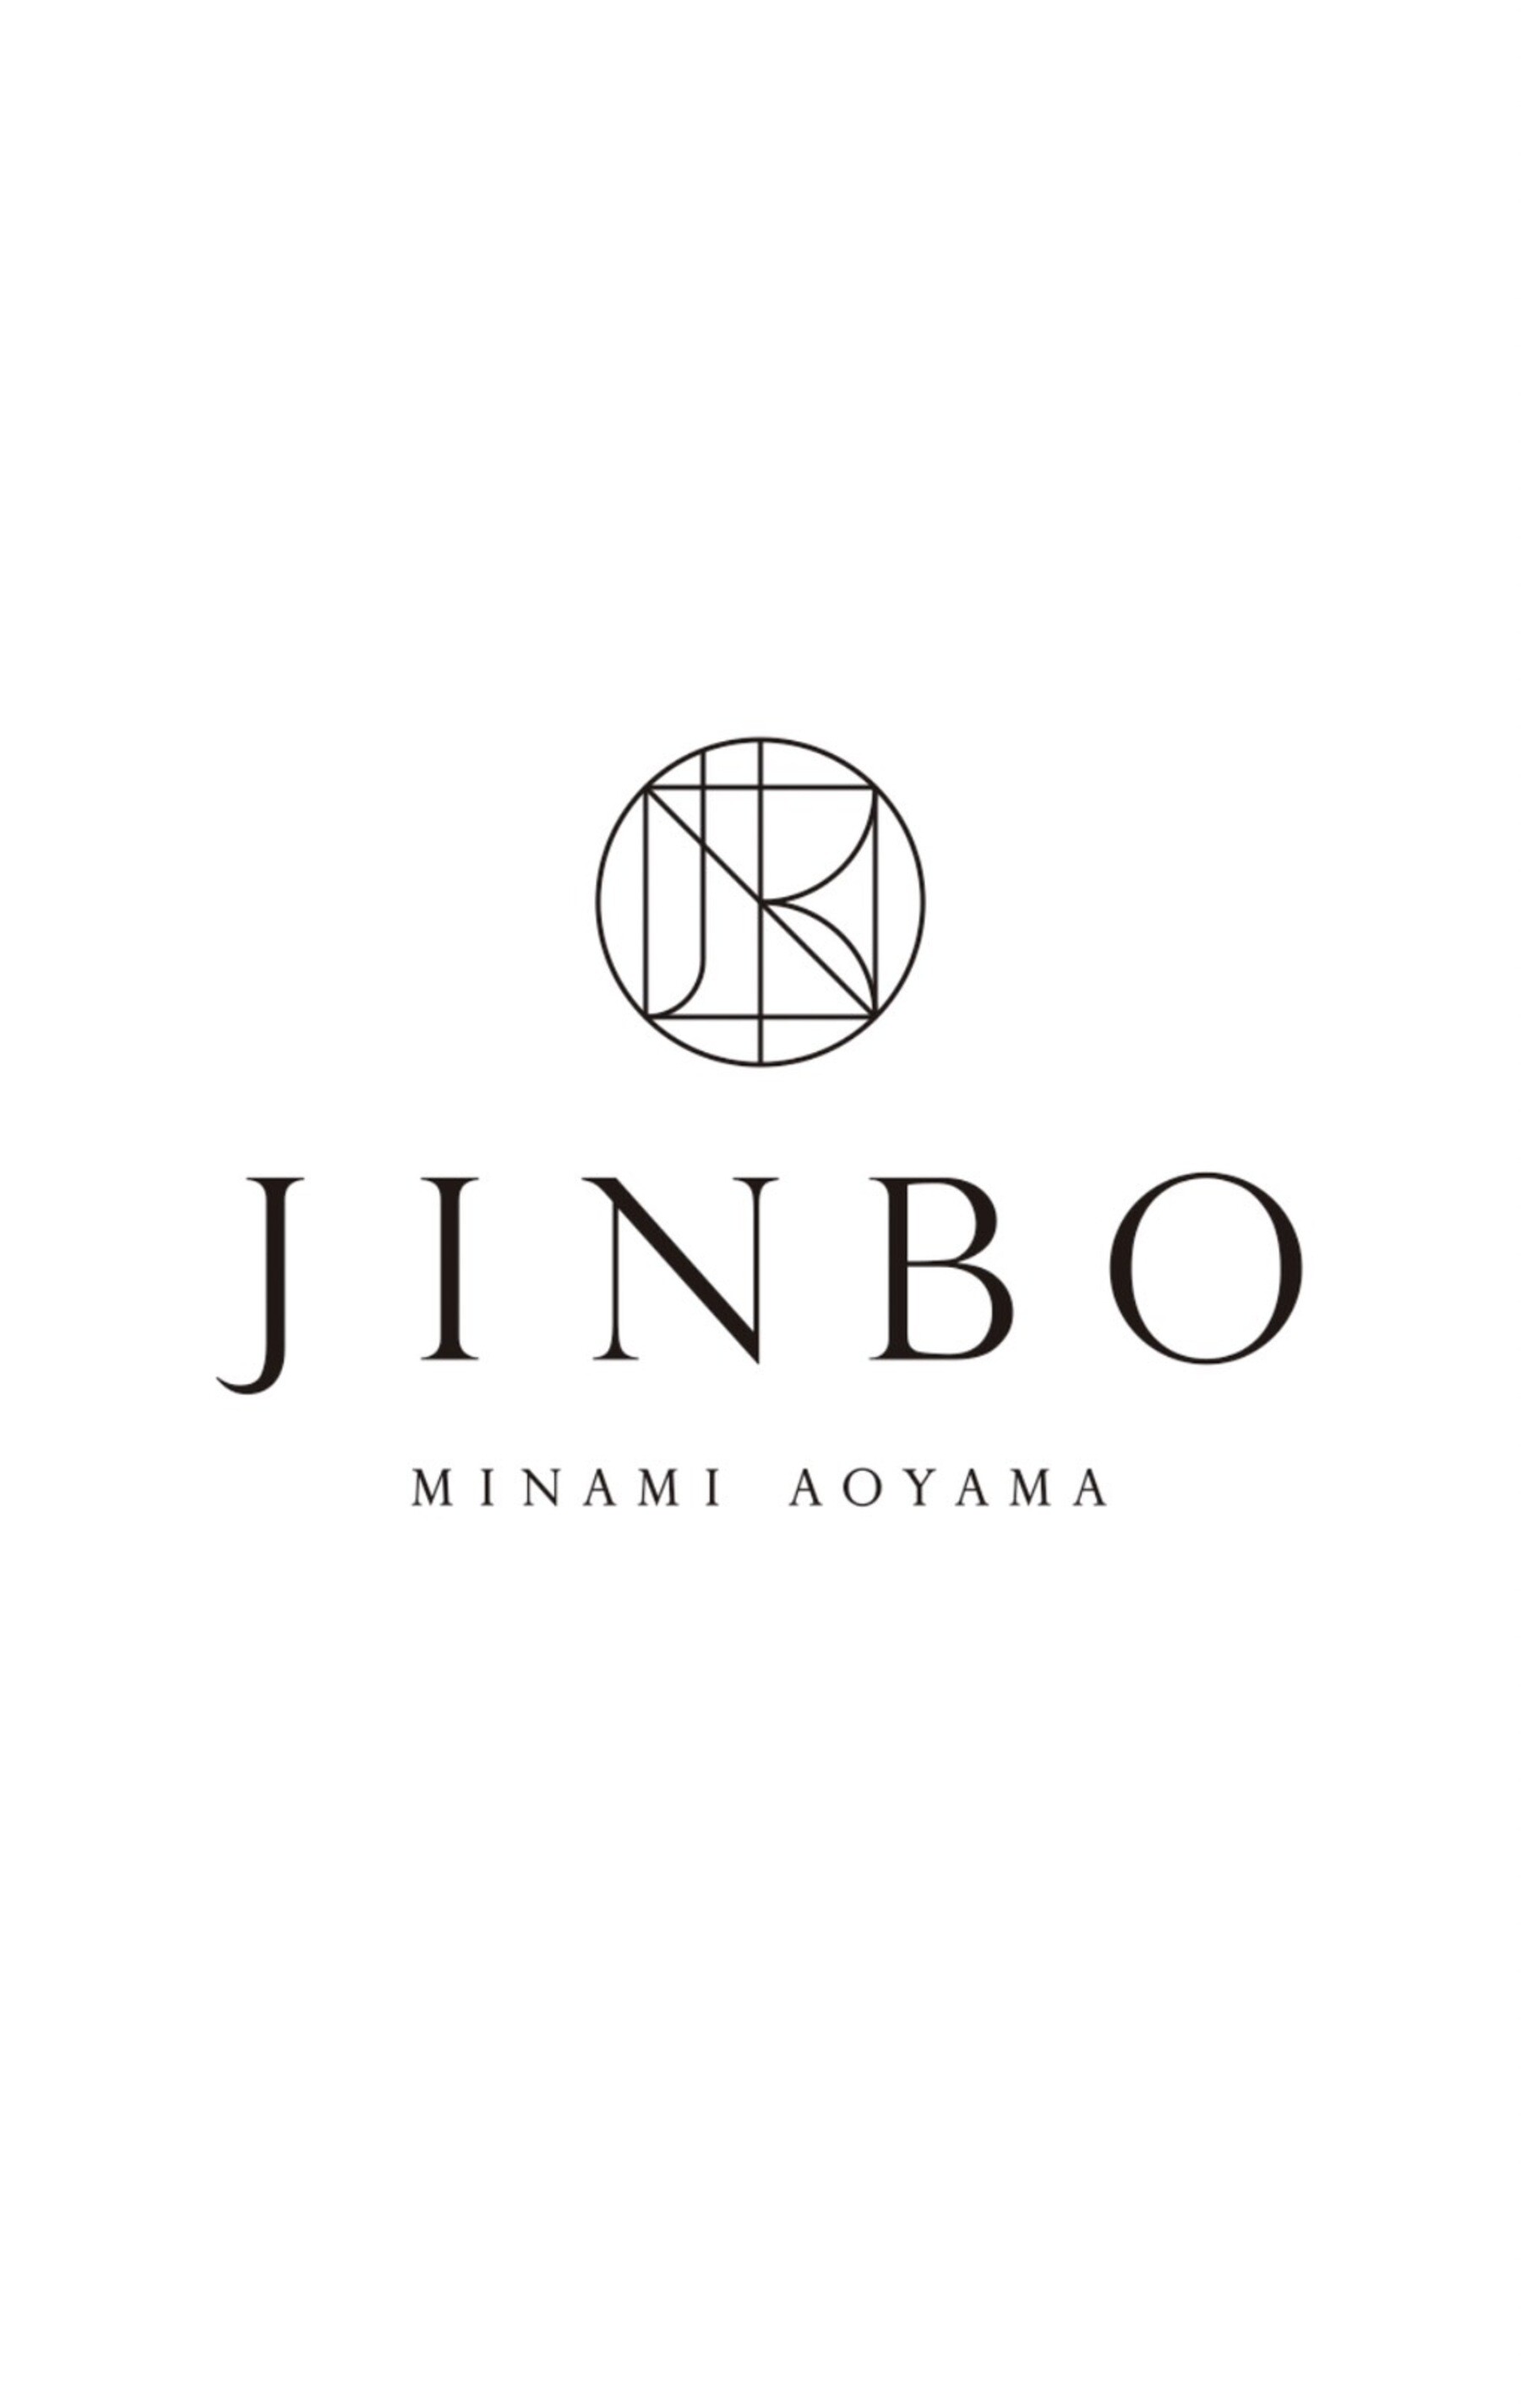 JINBO MINAMI AOYAMA's image 20